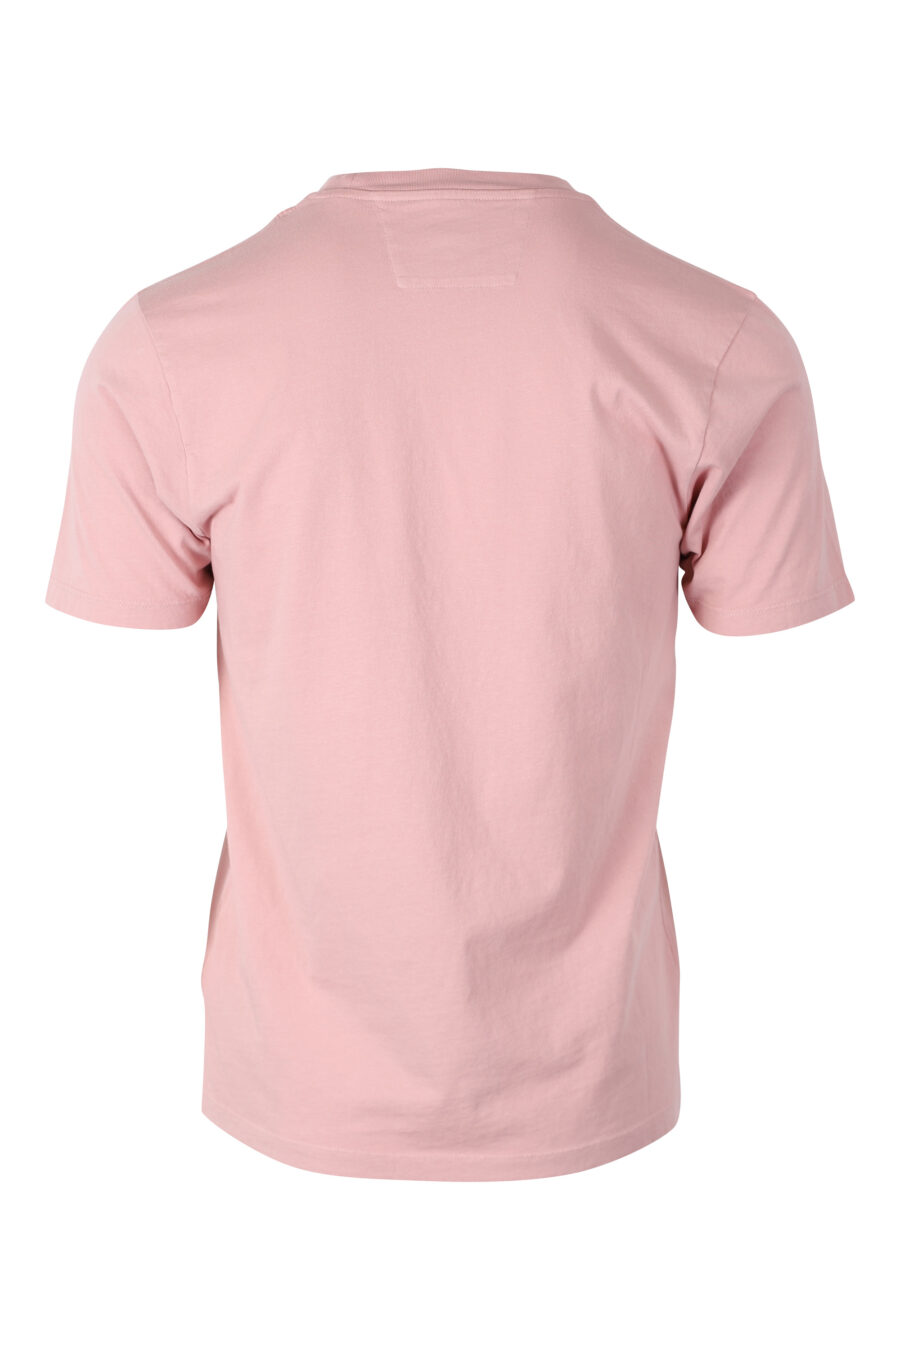 Rosa T-Shirt mit Maxilogo "Spray" - IMG 2403